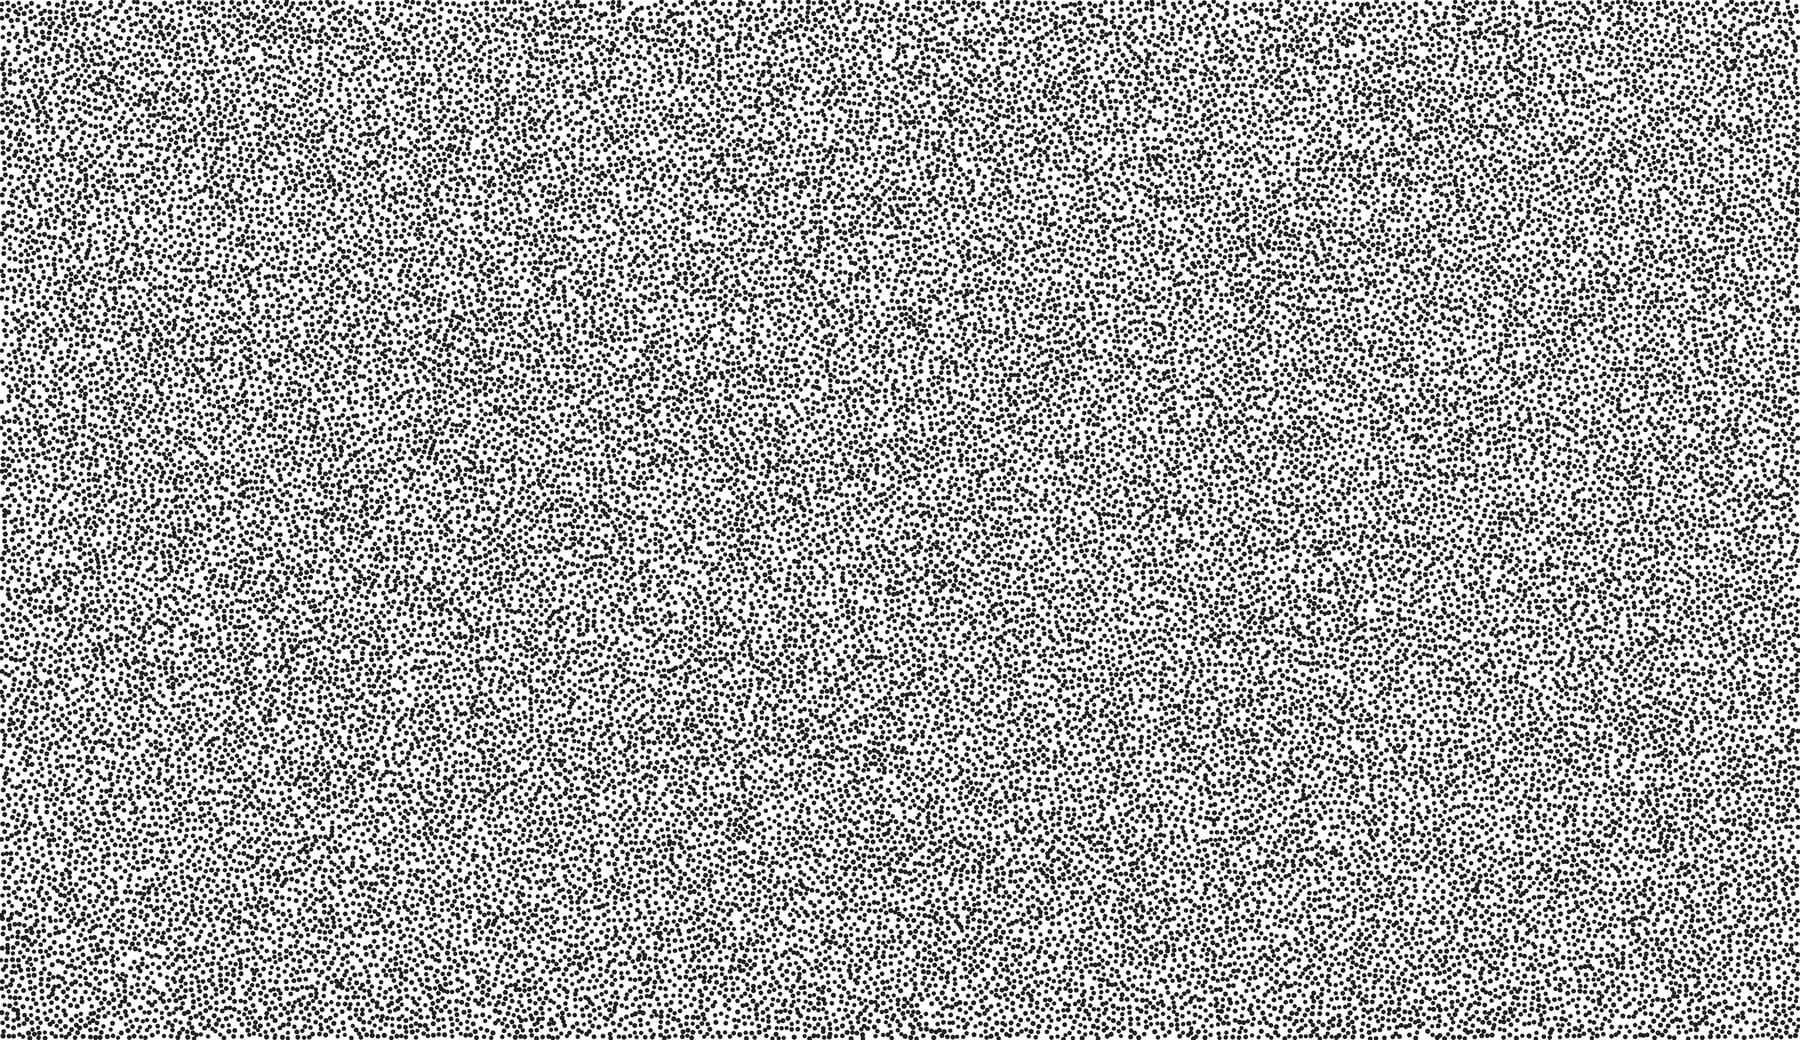 Una imagen de puntos negros y blancos: descripción gráfica del ruido blanco